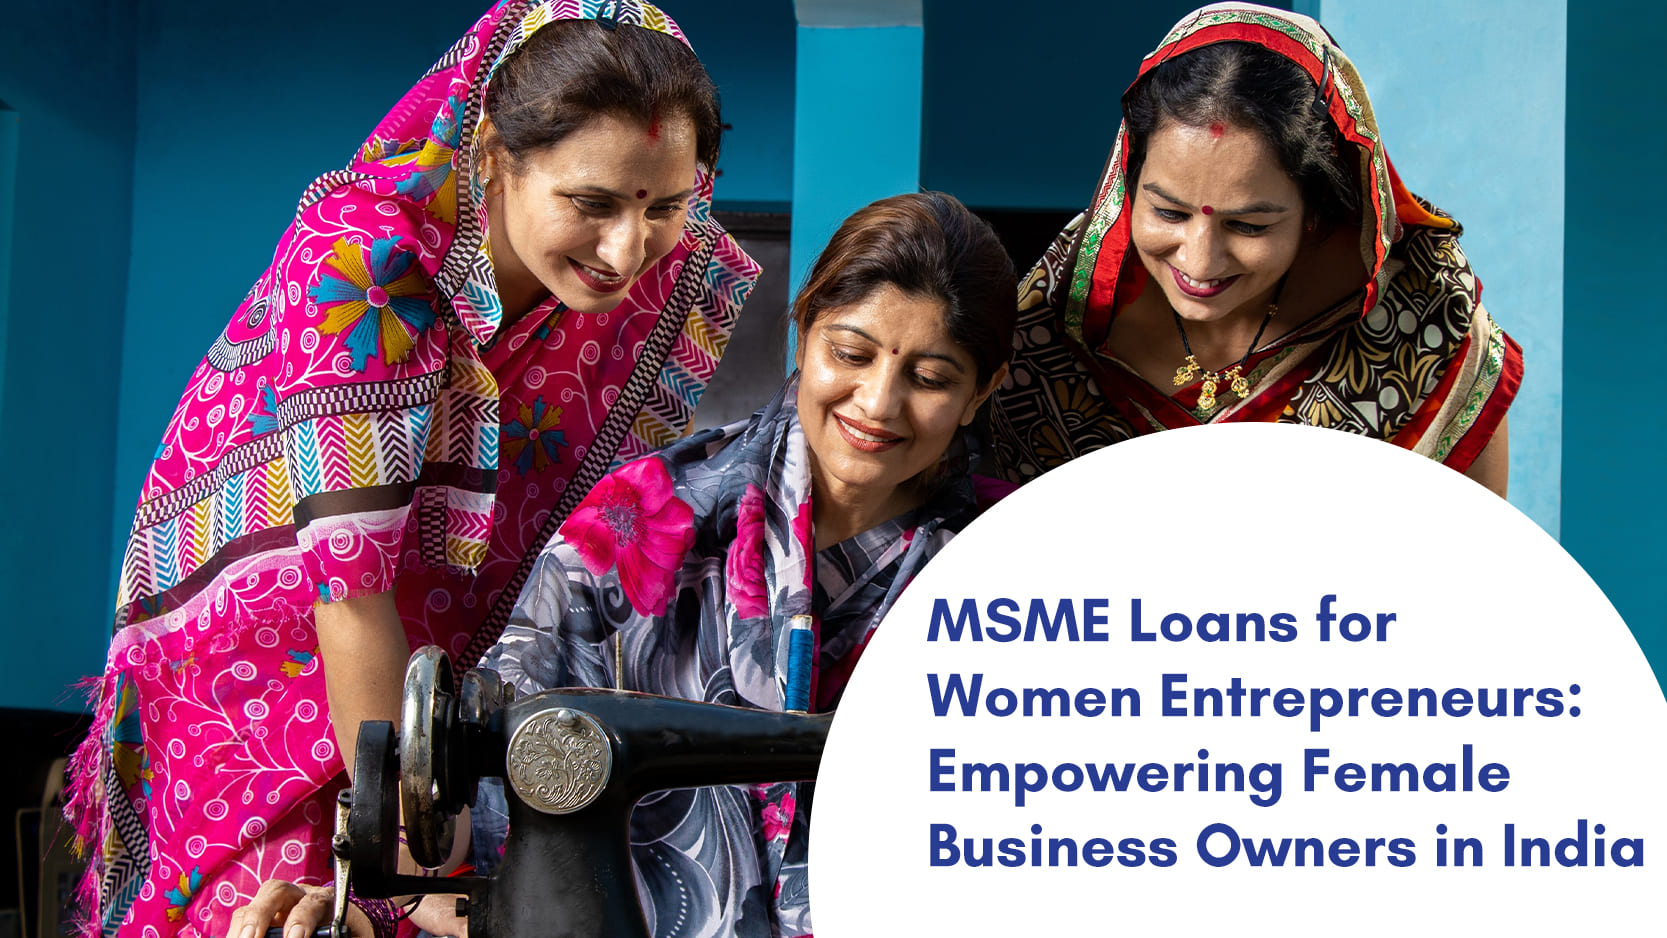 MSME Loans for Women Entrepreneurs